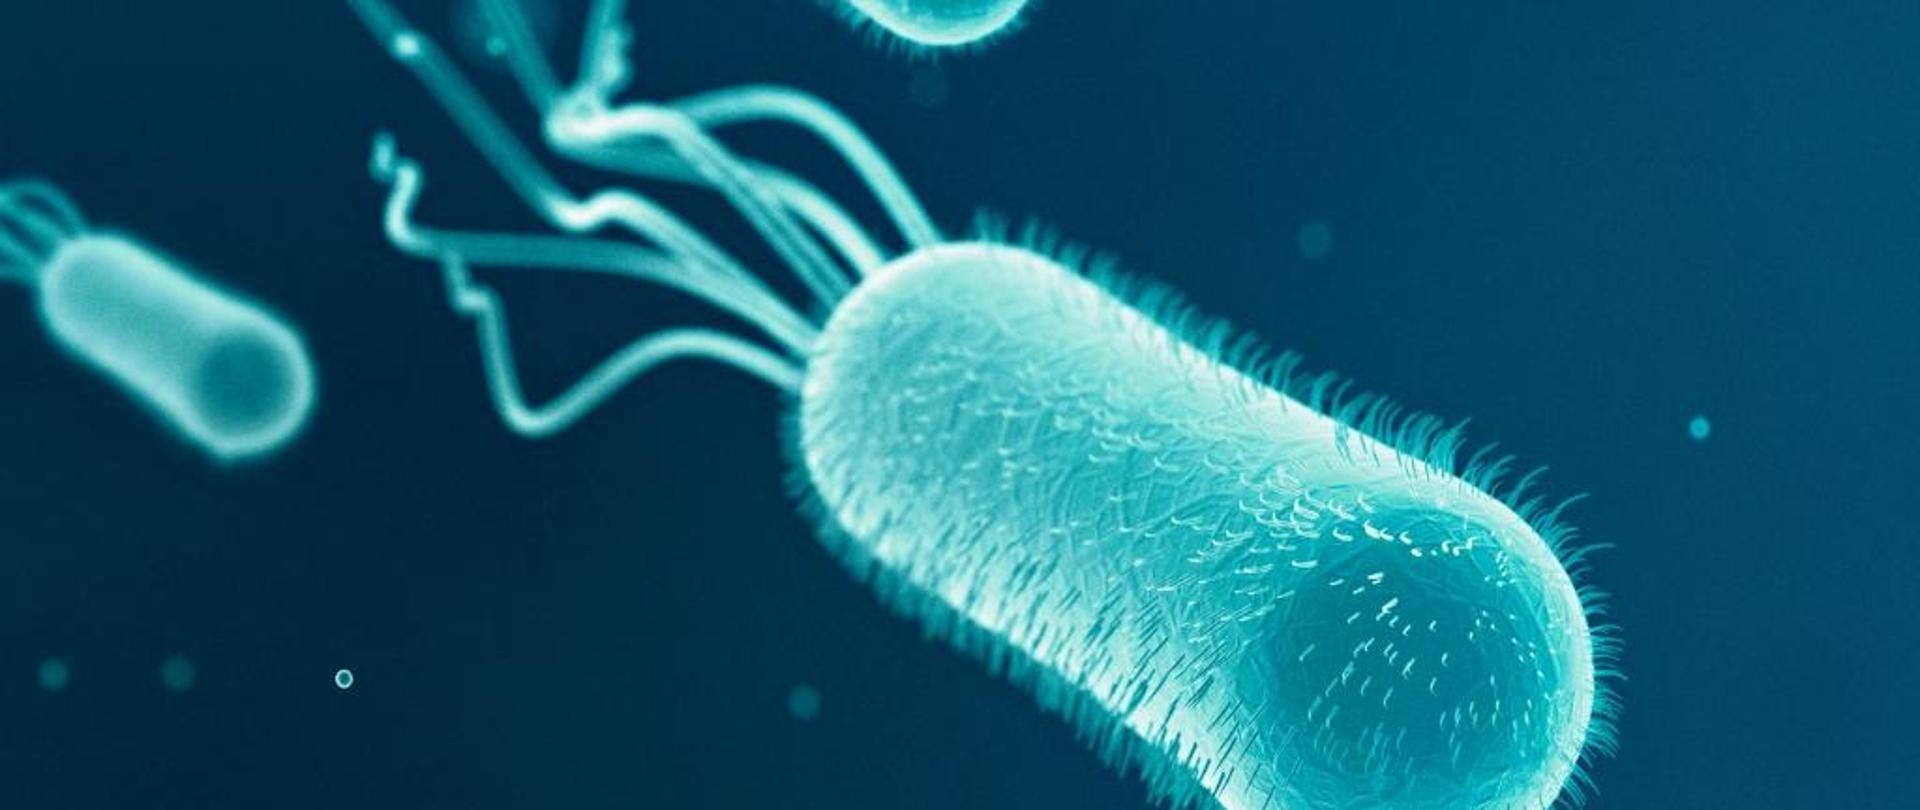  zdjęcie przedstawia bakterie Escherichia coli.